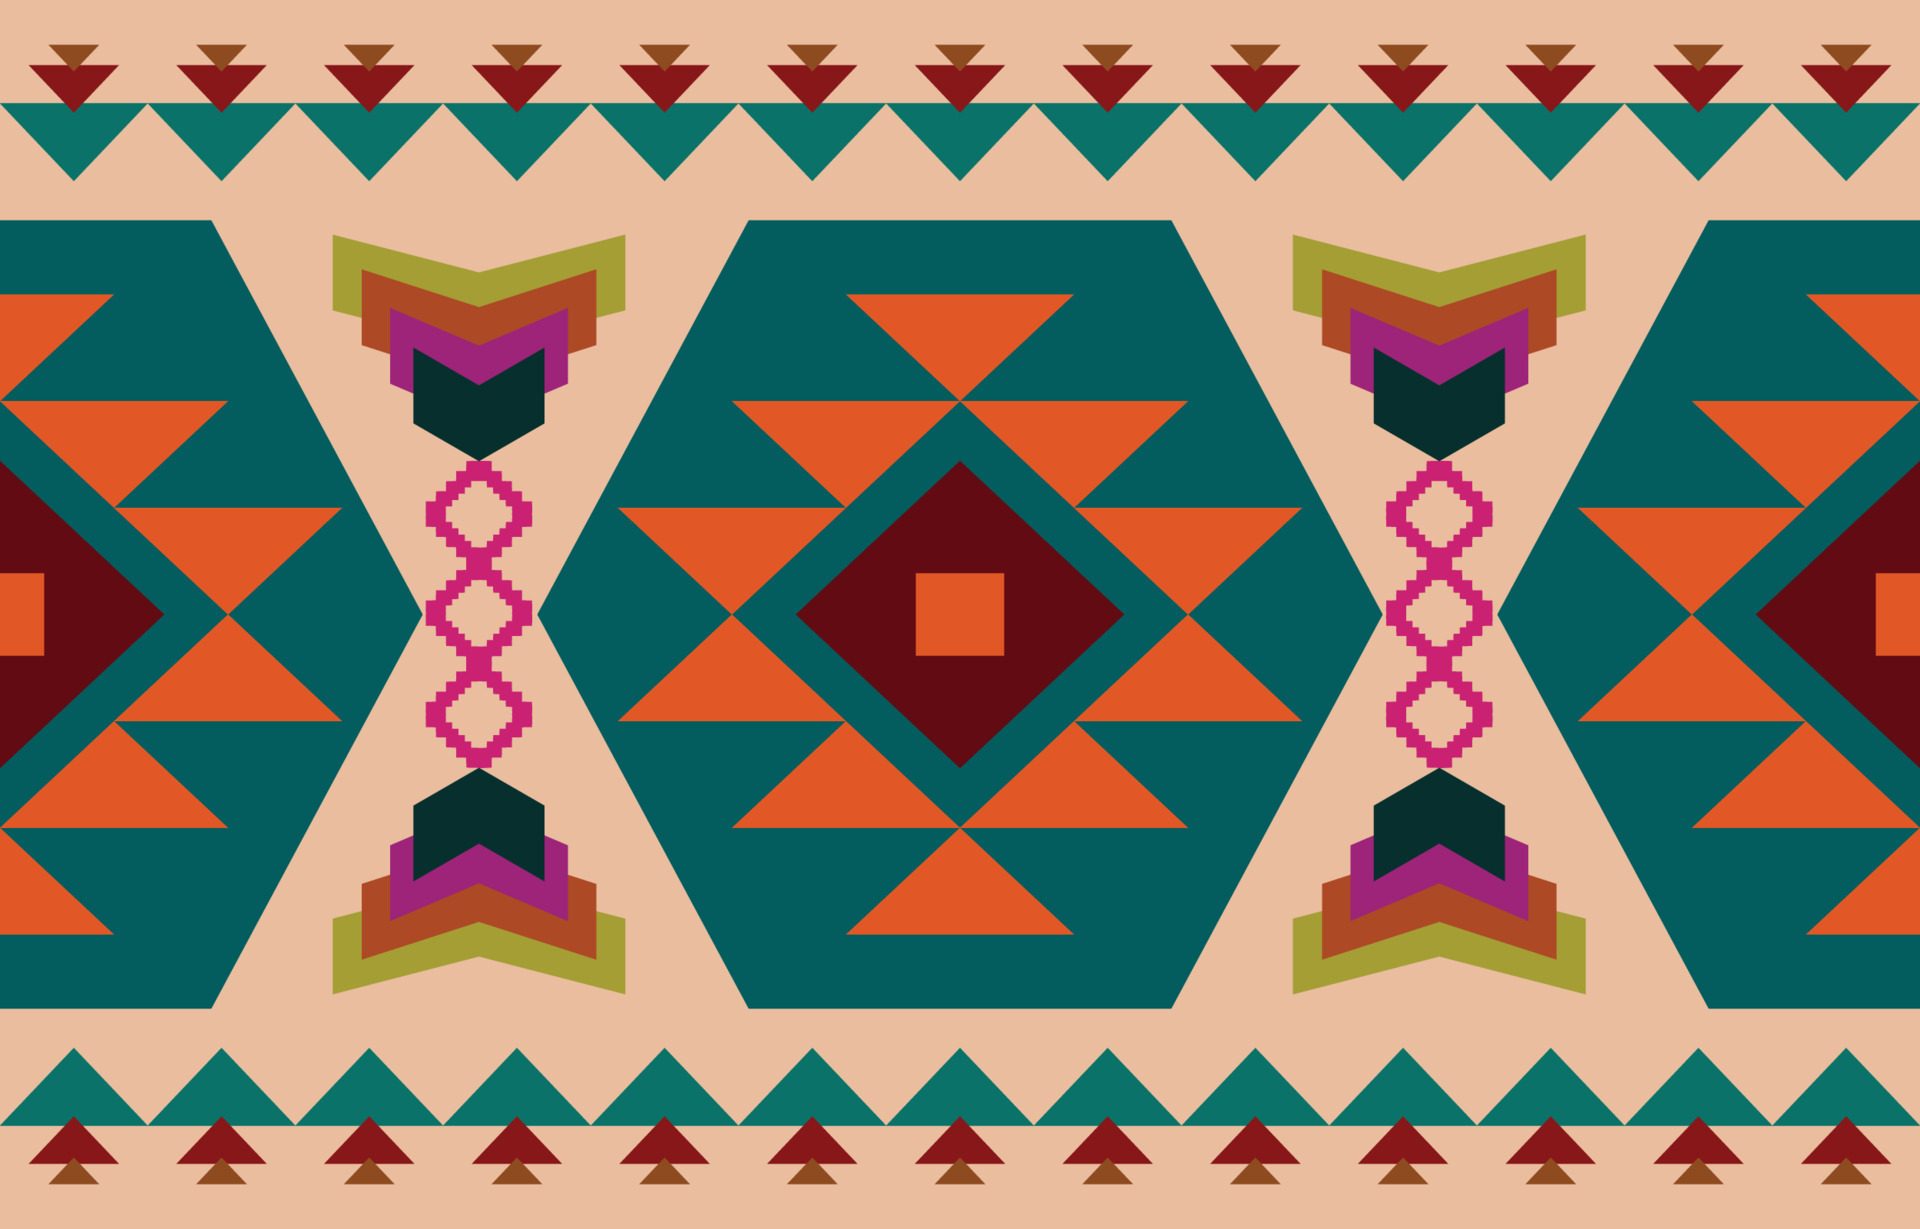 Mẫu vải Navajo bản địa đang trở thành một xu hướng thịnh hành. Với sự dệt với những sợi len mịn màng và hình ảnh đa dạng, mẫu vải Navajo vô cùng phong phú và ấn tượng. Hãy xem hình ảnh để thấy vẻ đẹp của mẫu vải Navajo bản địa.